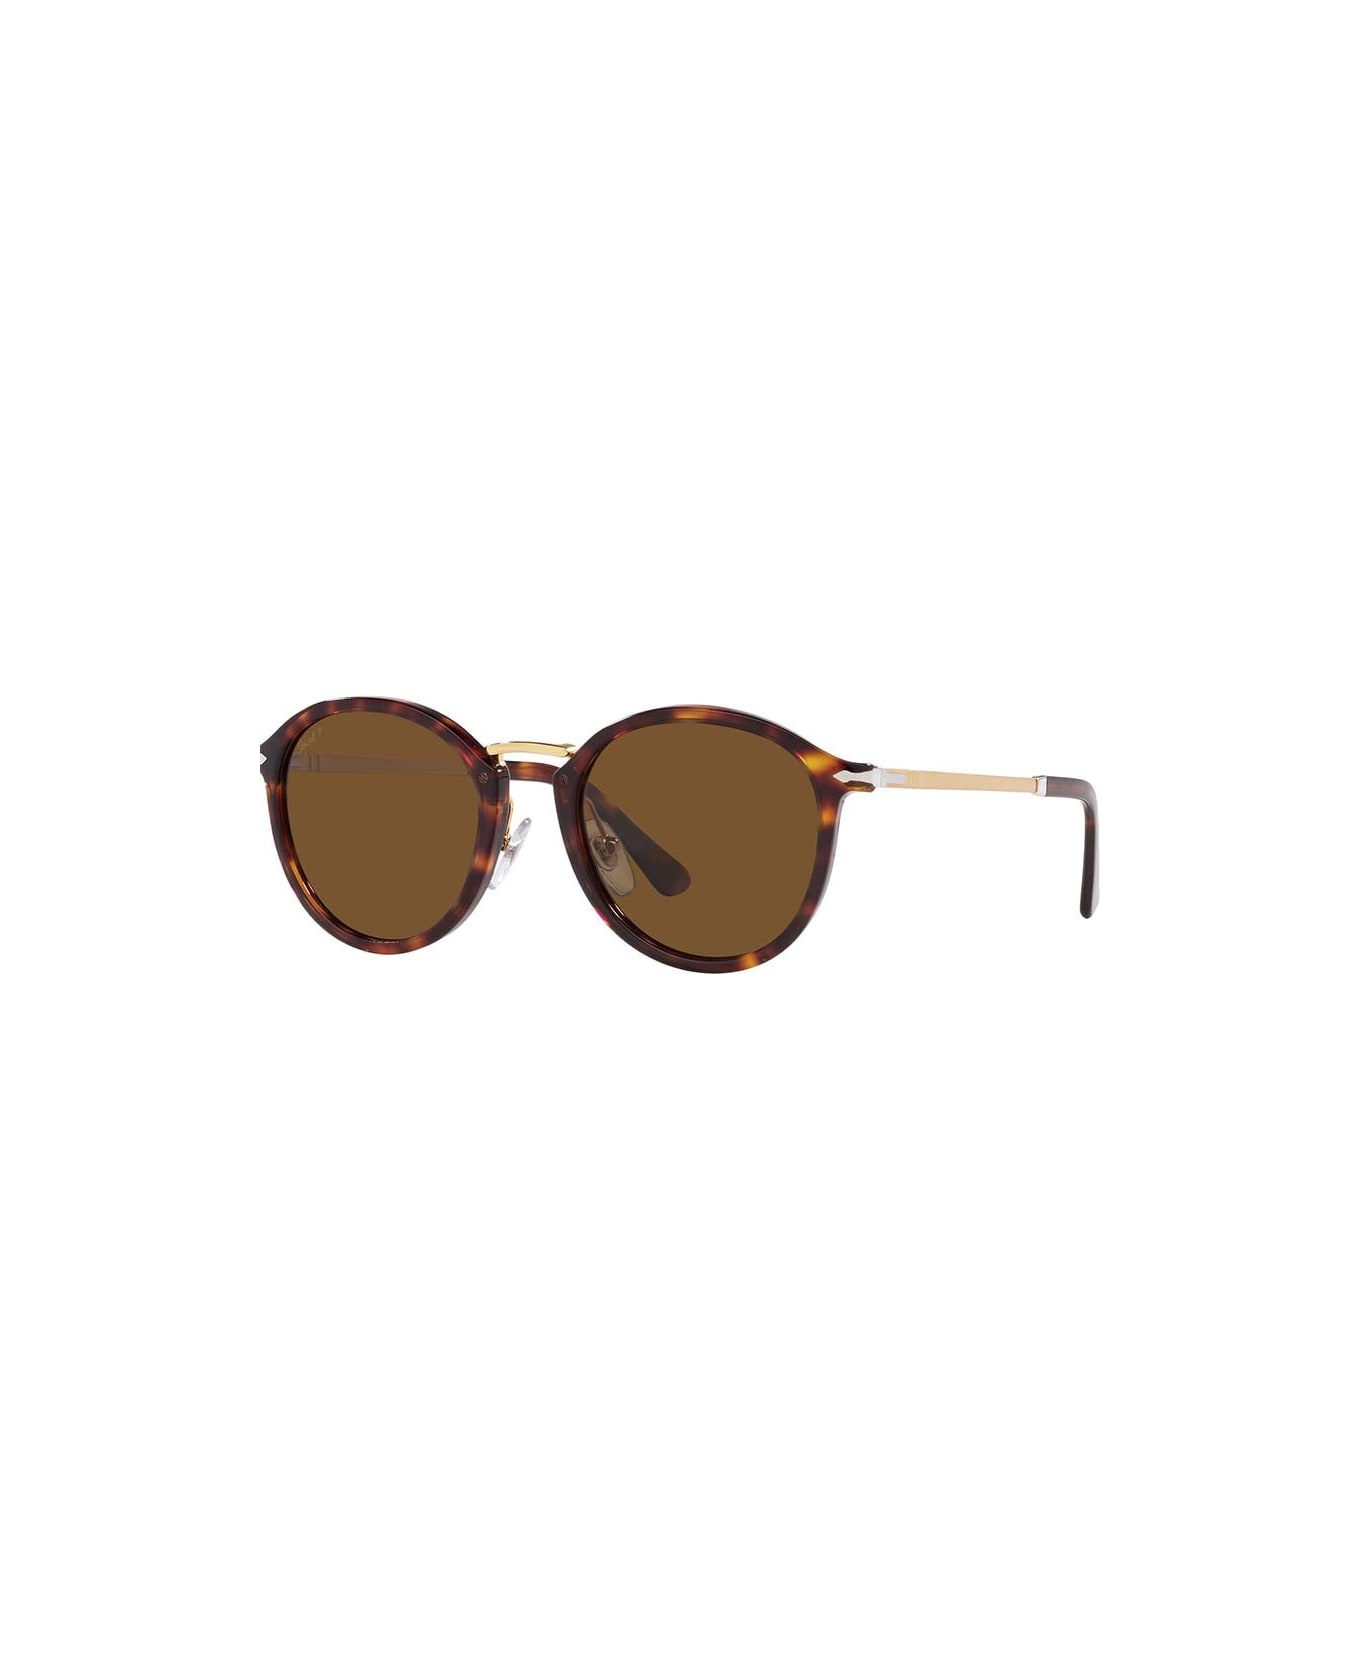 Persol Sunglasses - Marrone/Marrone